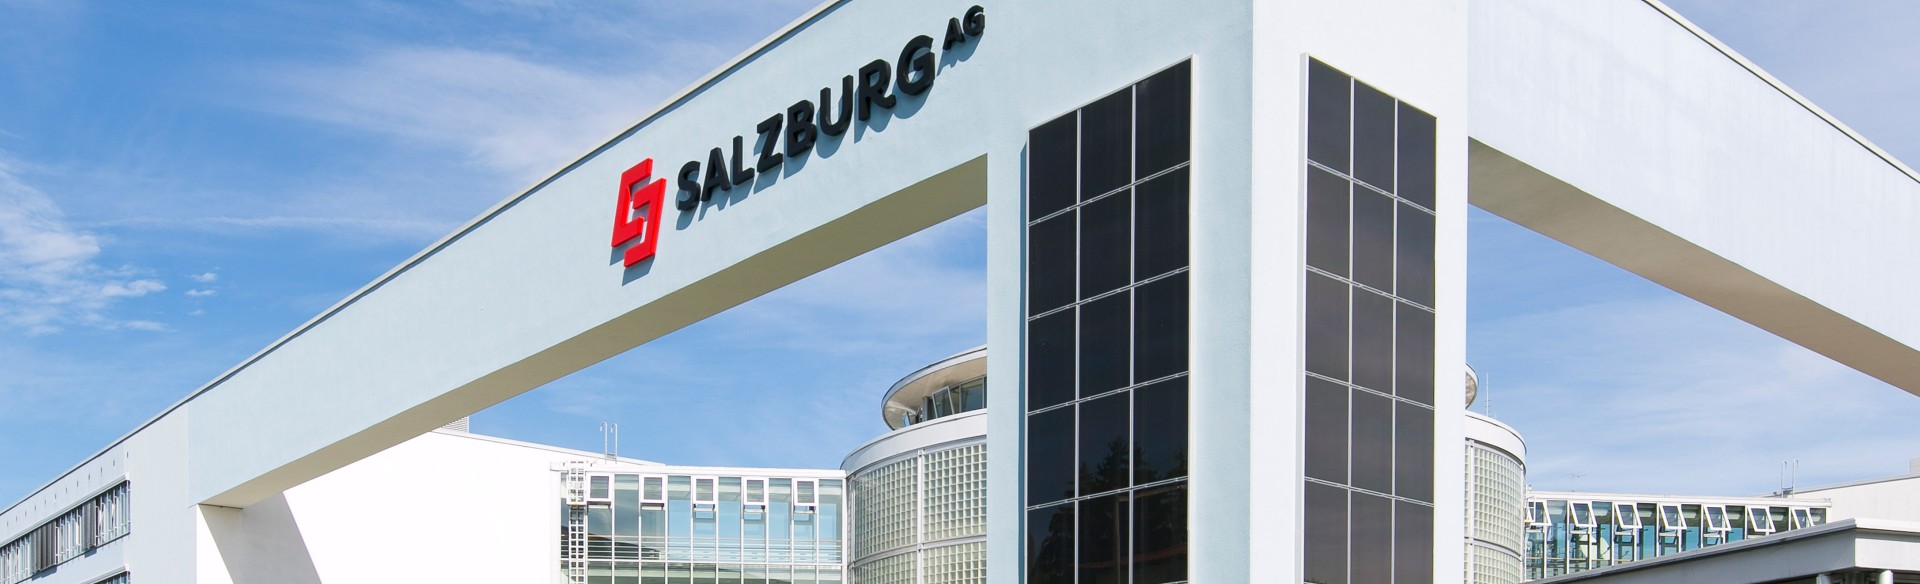 Salzburg AG, Gebäude, Bayerhamerstraße 16, Salzburg, (c) wildbild